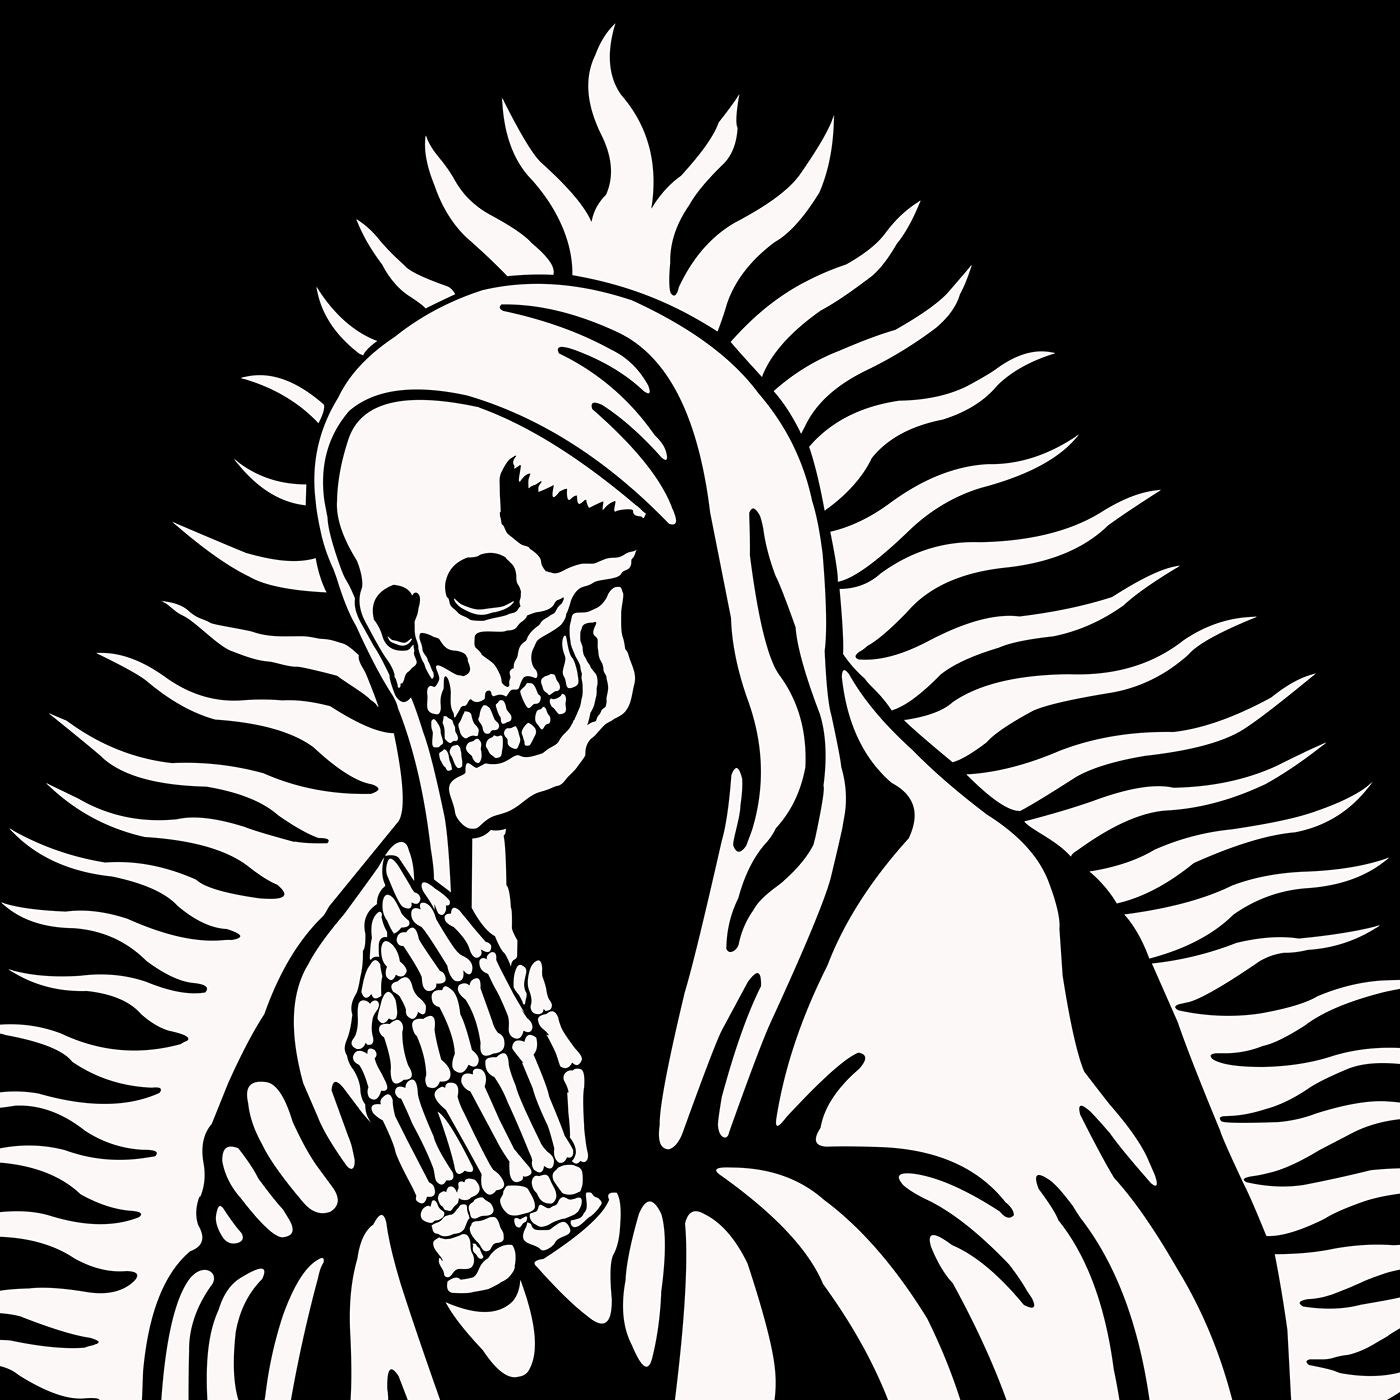 day of the dead death dia de los muertos Guadalupe los muertos santa morte santa muerte são paulo skull SP